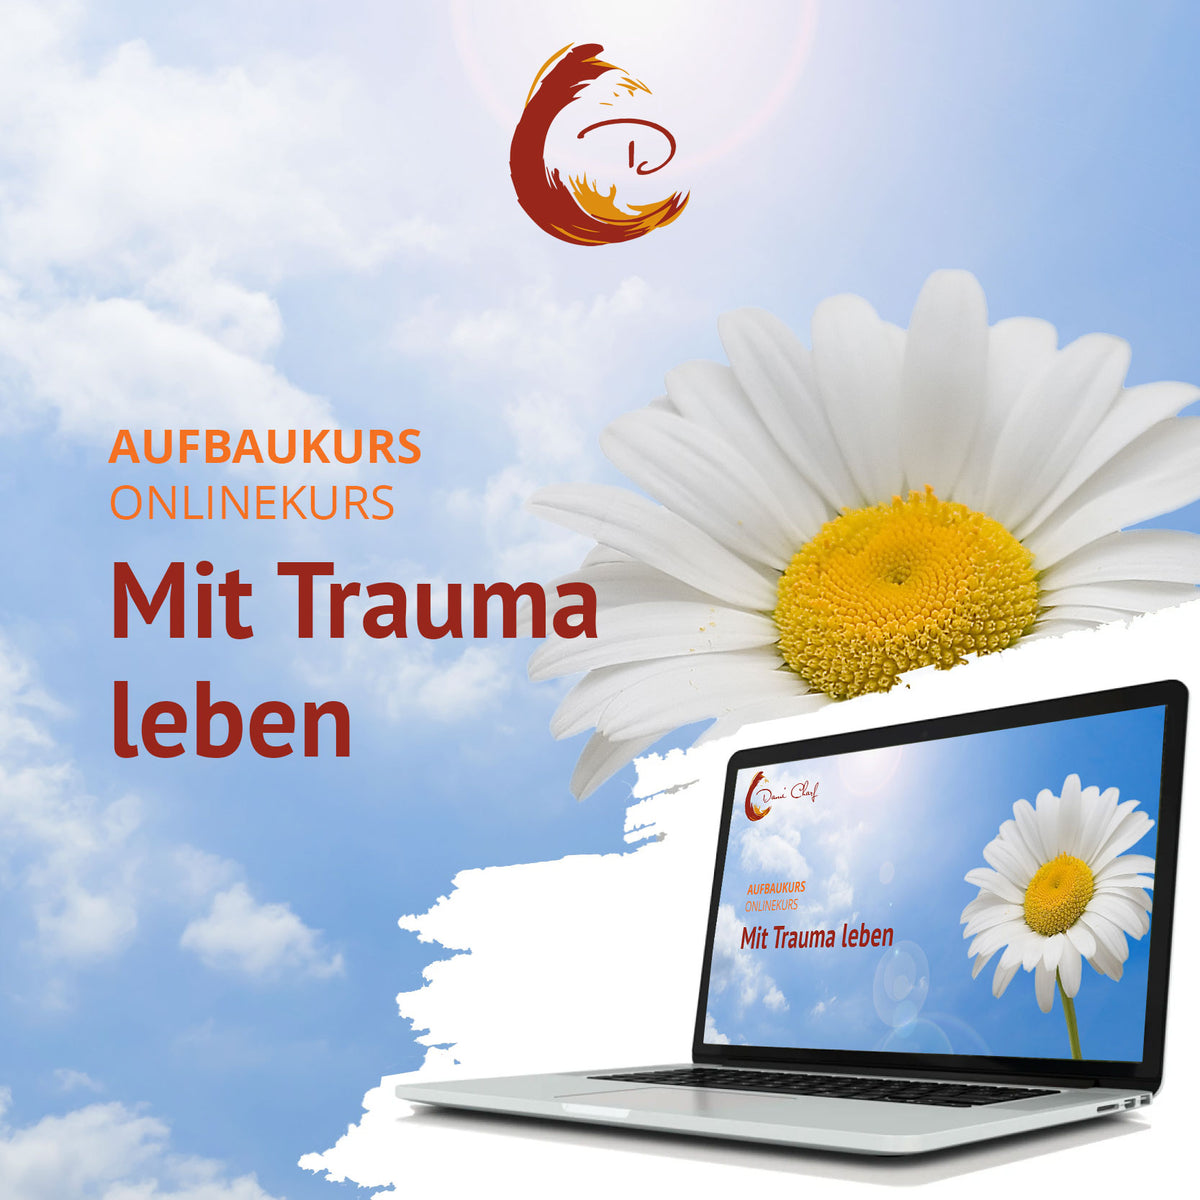 Mit Trauma leben (Aufbaukurs) - Information